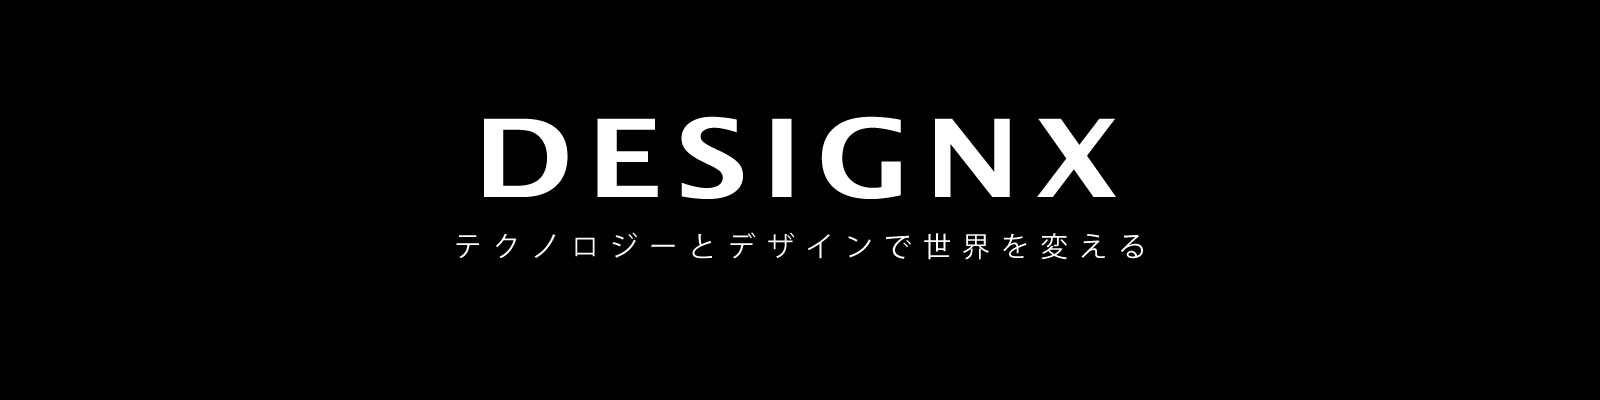 DESIGNX テクノロジーとデザインで世界を変える